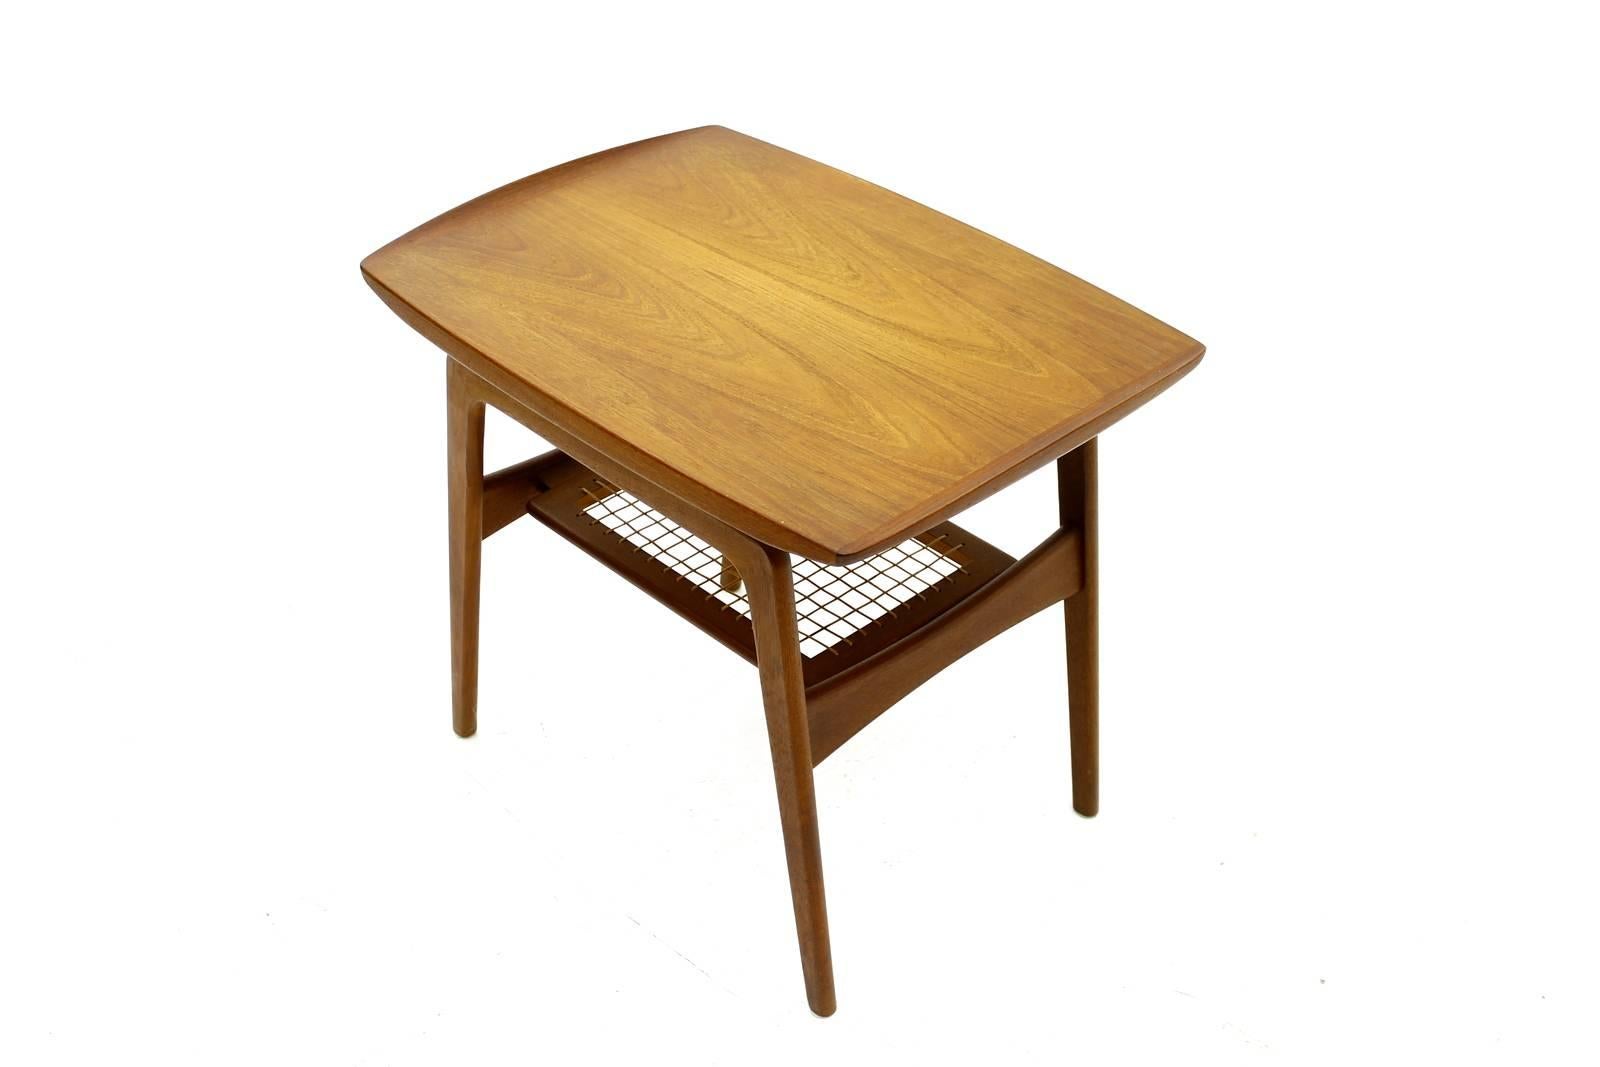 Teak & Cane Side Table by Arne Hovmand Olsen, Mogens Kold, Denmark 1950. Excellent Condition.

Worldwide shipping.
